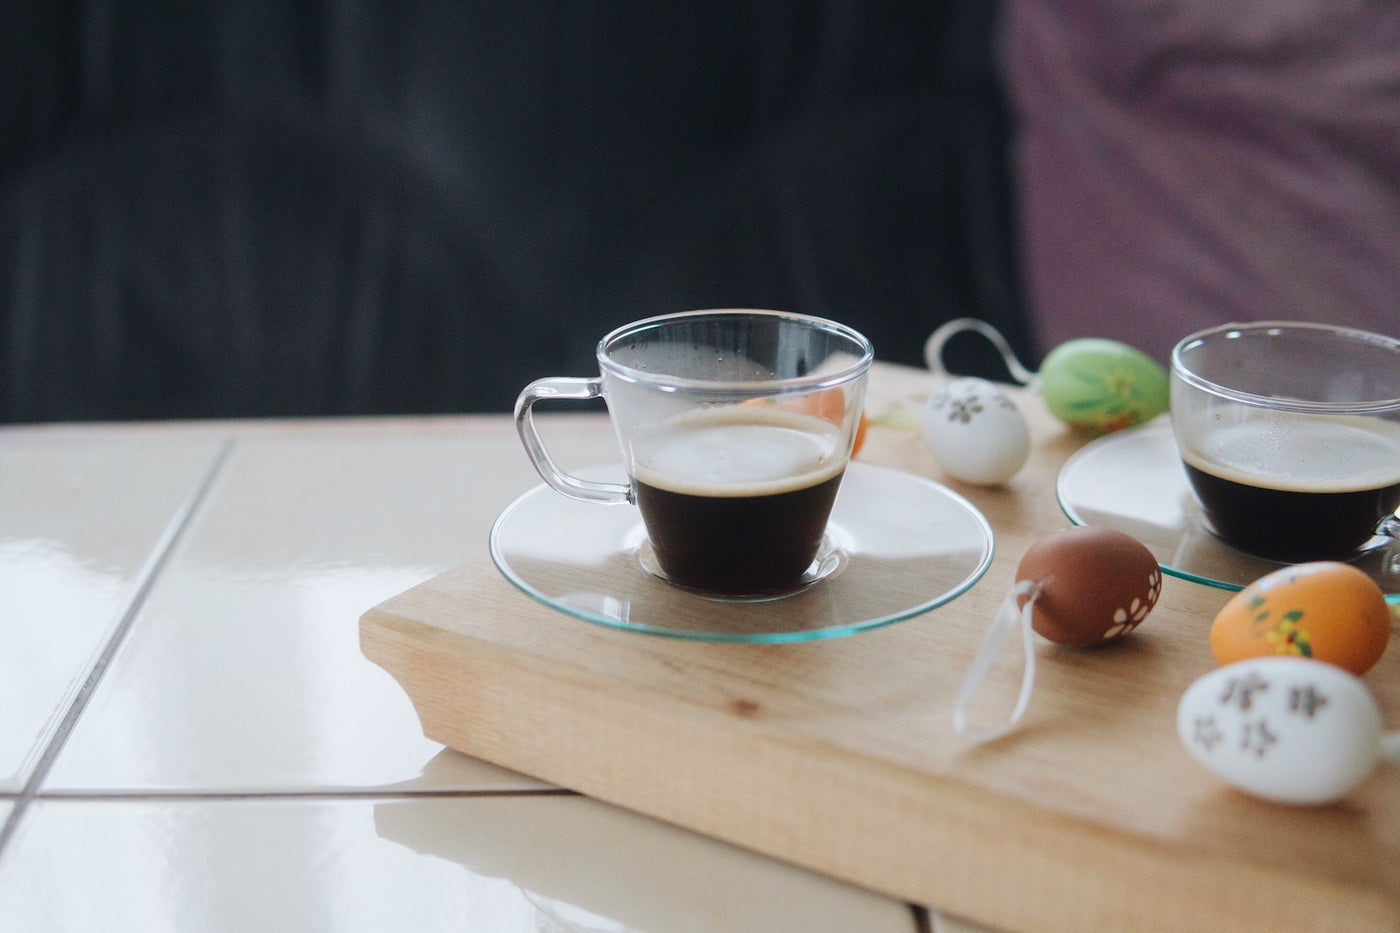 Skleněný hrnek na espresso Simax Piccolo 0,1 l a velikonoční vajíčka na stole v obývacím pokoji